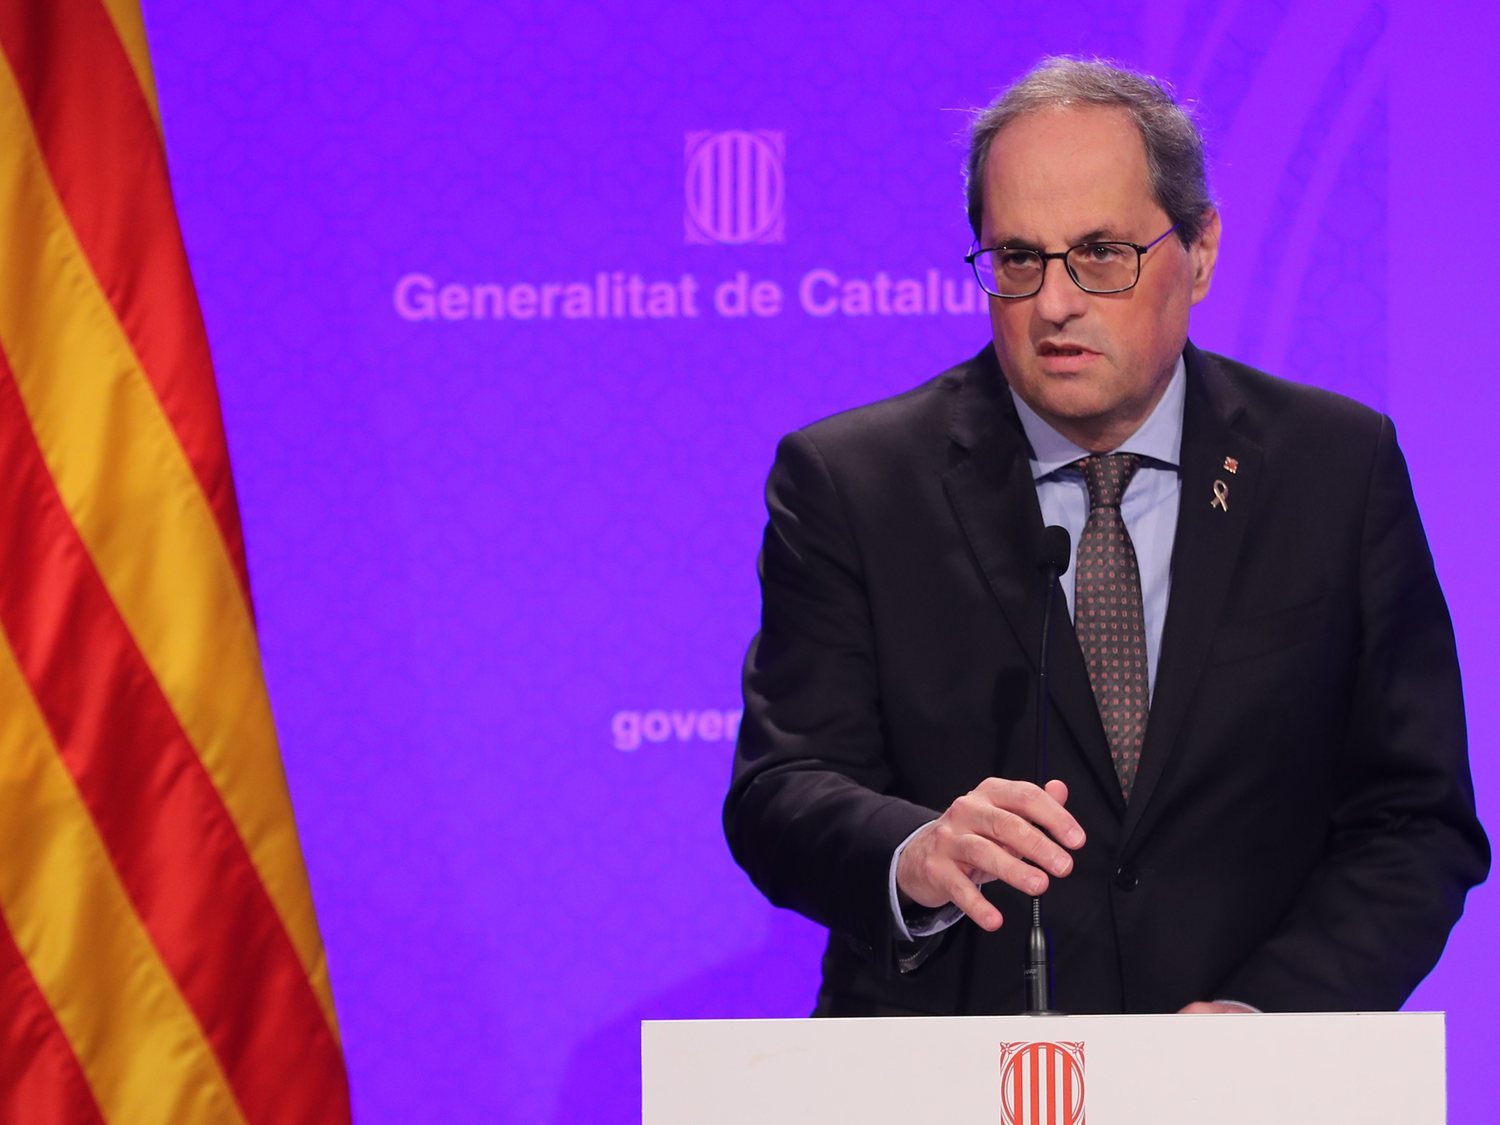 La sucia gestión de los líderes nacionalistas catalanes en plena crisis del coronavirus